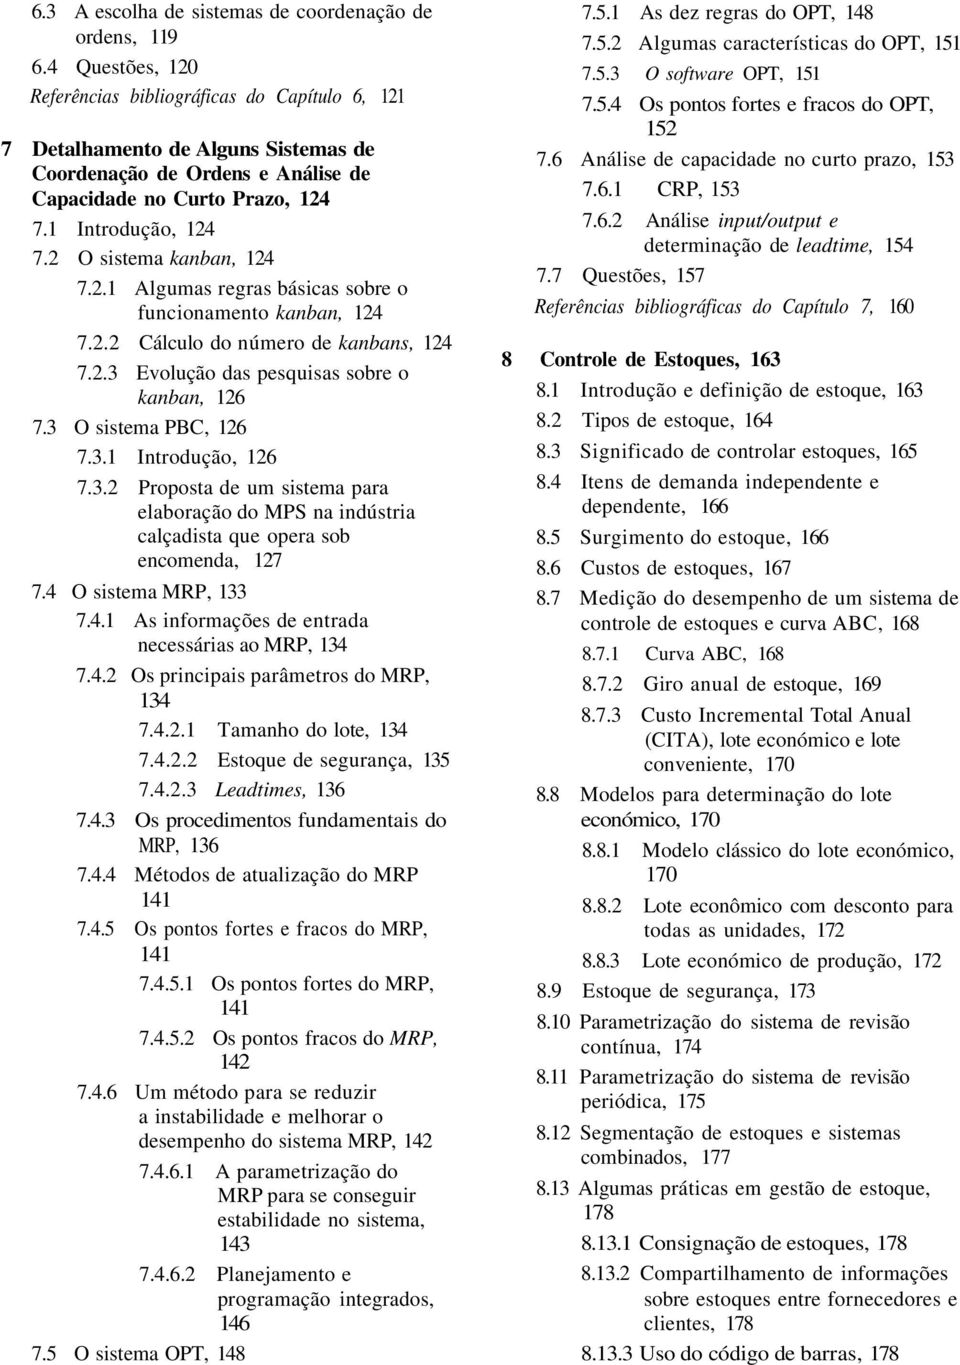 2 O sistema kanban, 124 7.2.1 Algumas regras básicas sobre o funcionamento kanban, 124 7.2.2 Cálculo do número de kanbans, 124 7.2.3 Evolução das pesquisas sobre o kanban, 126 7.